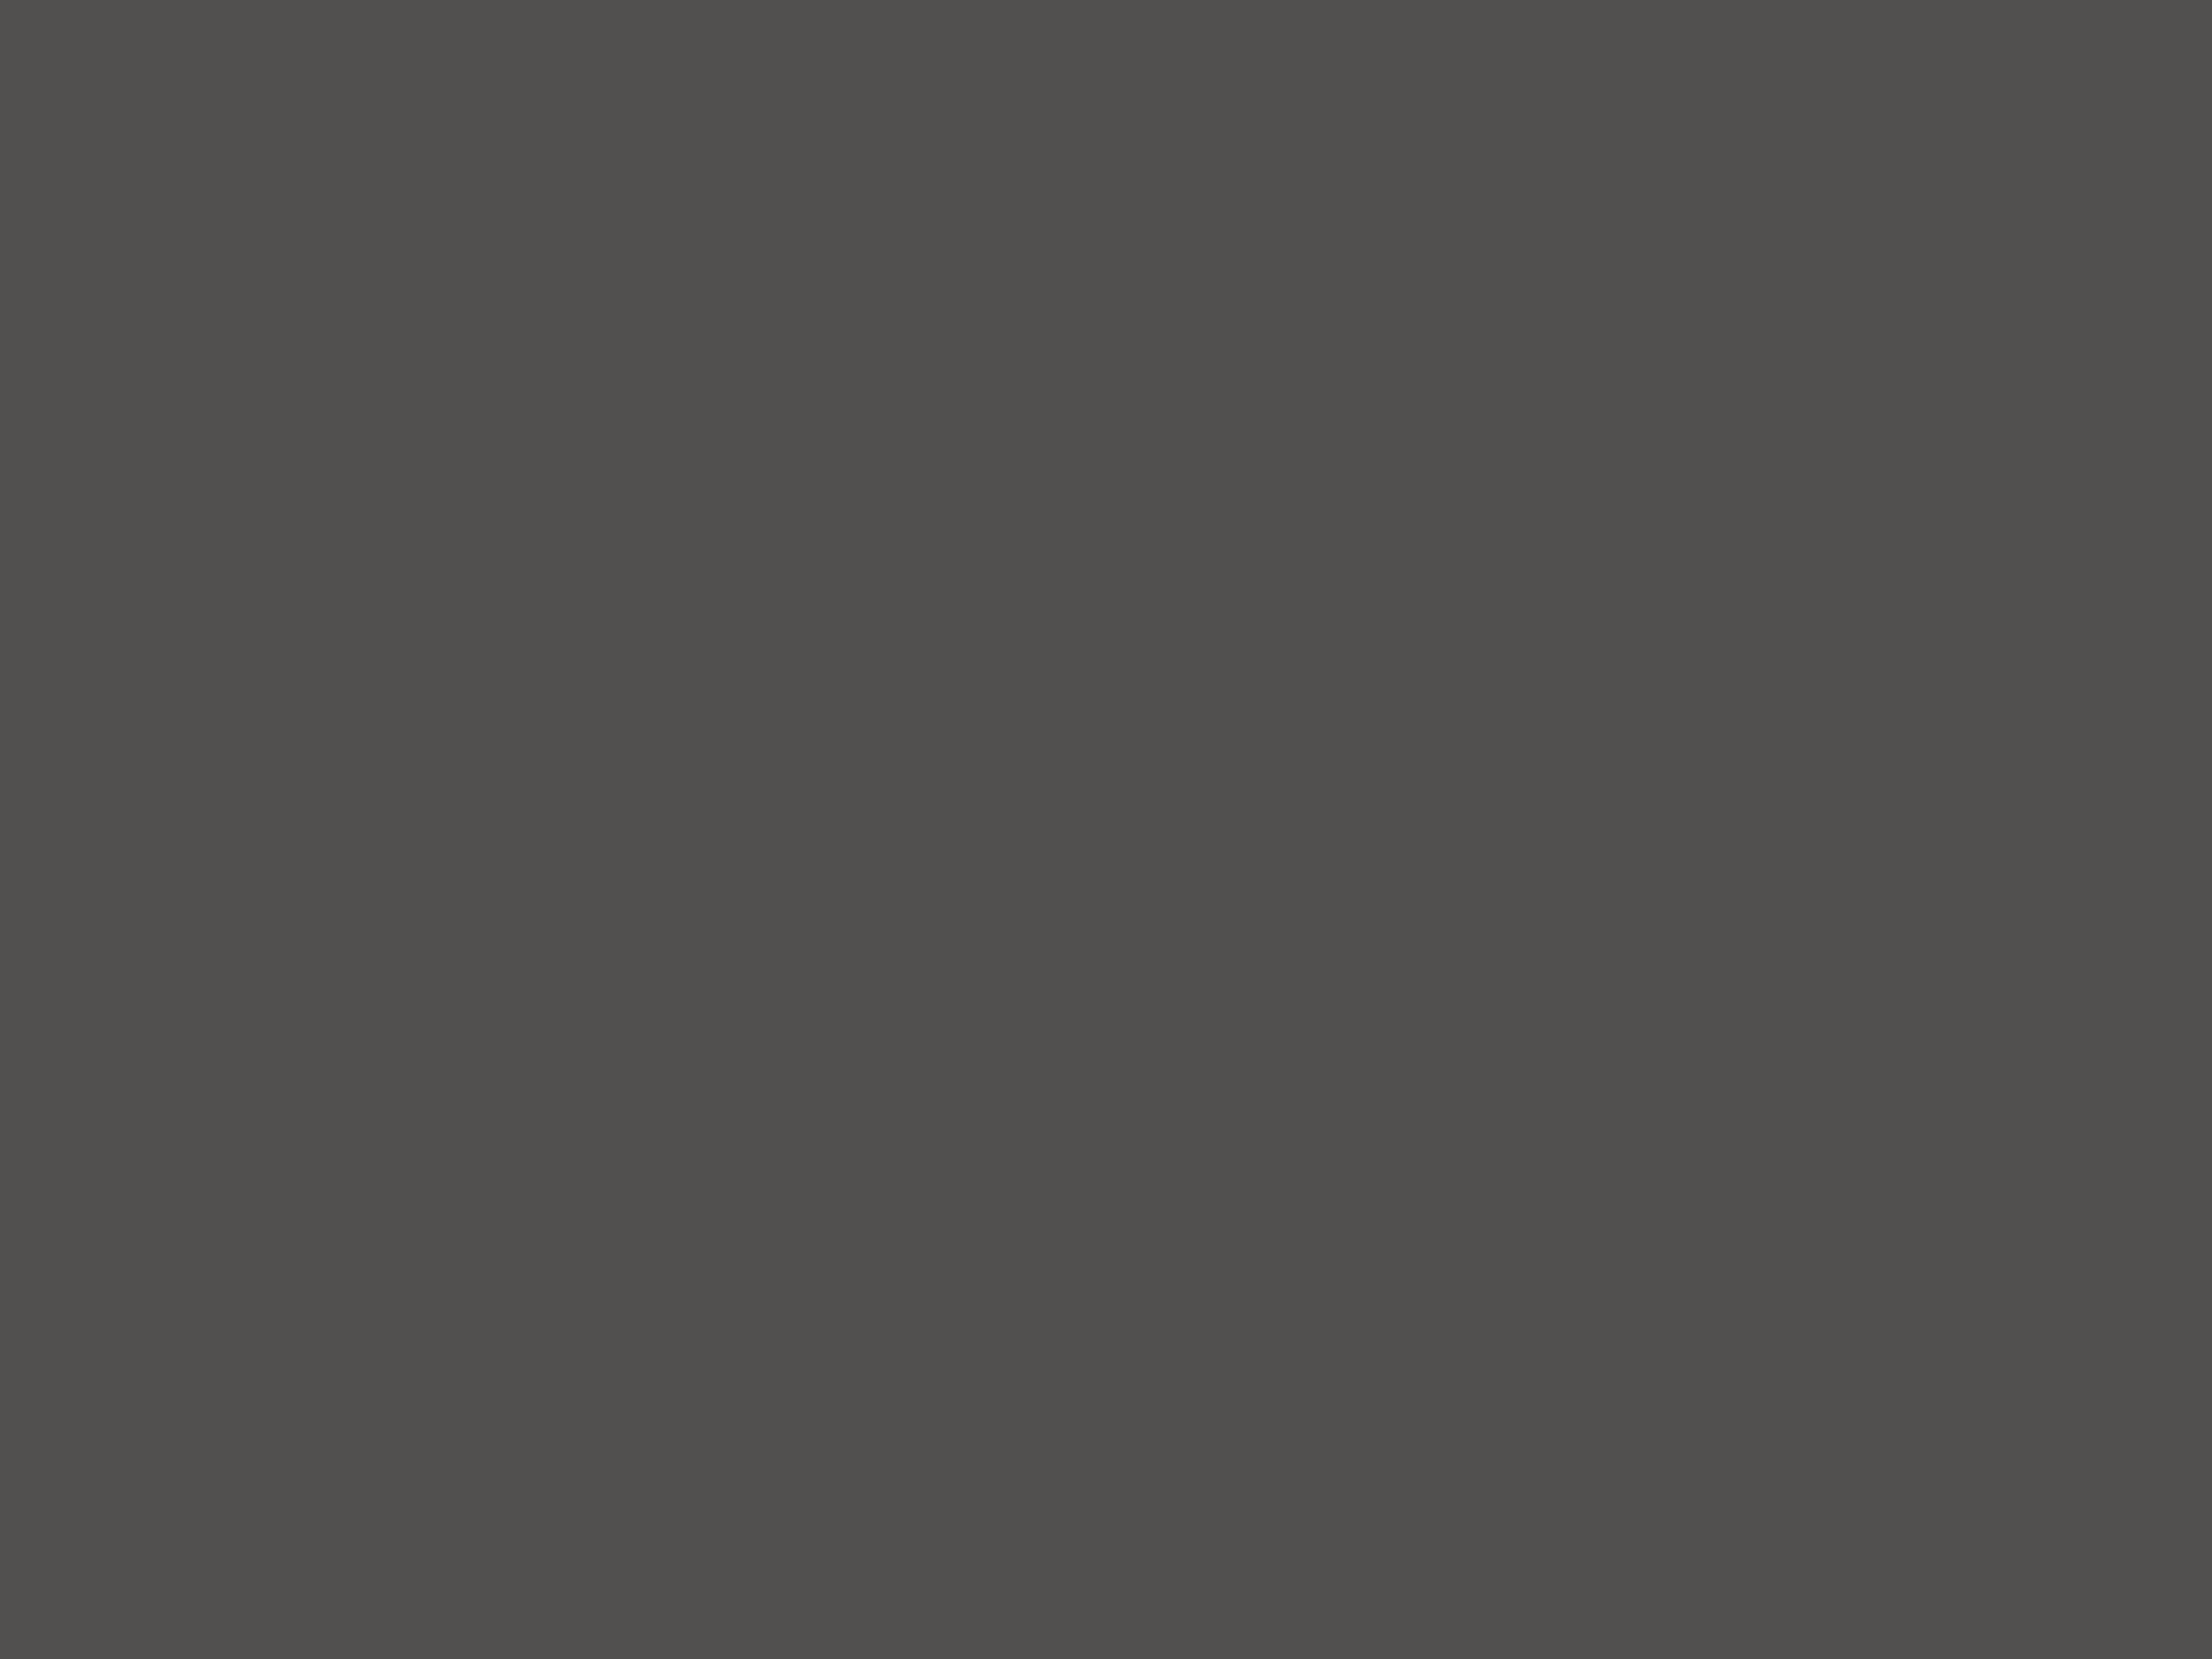 Исследовательский лист из проекта «Воображаемый музей Михаила Шемякина «Лестница в искусстве». Новая Третьяковка, Москва